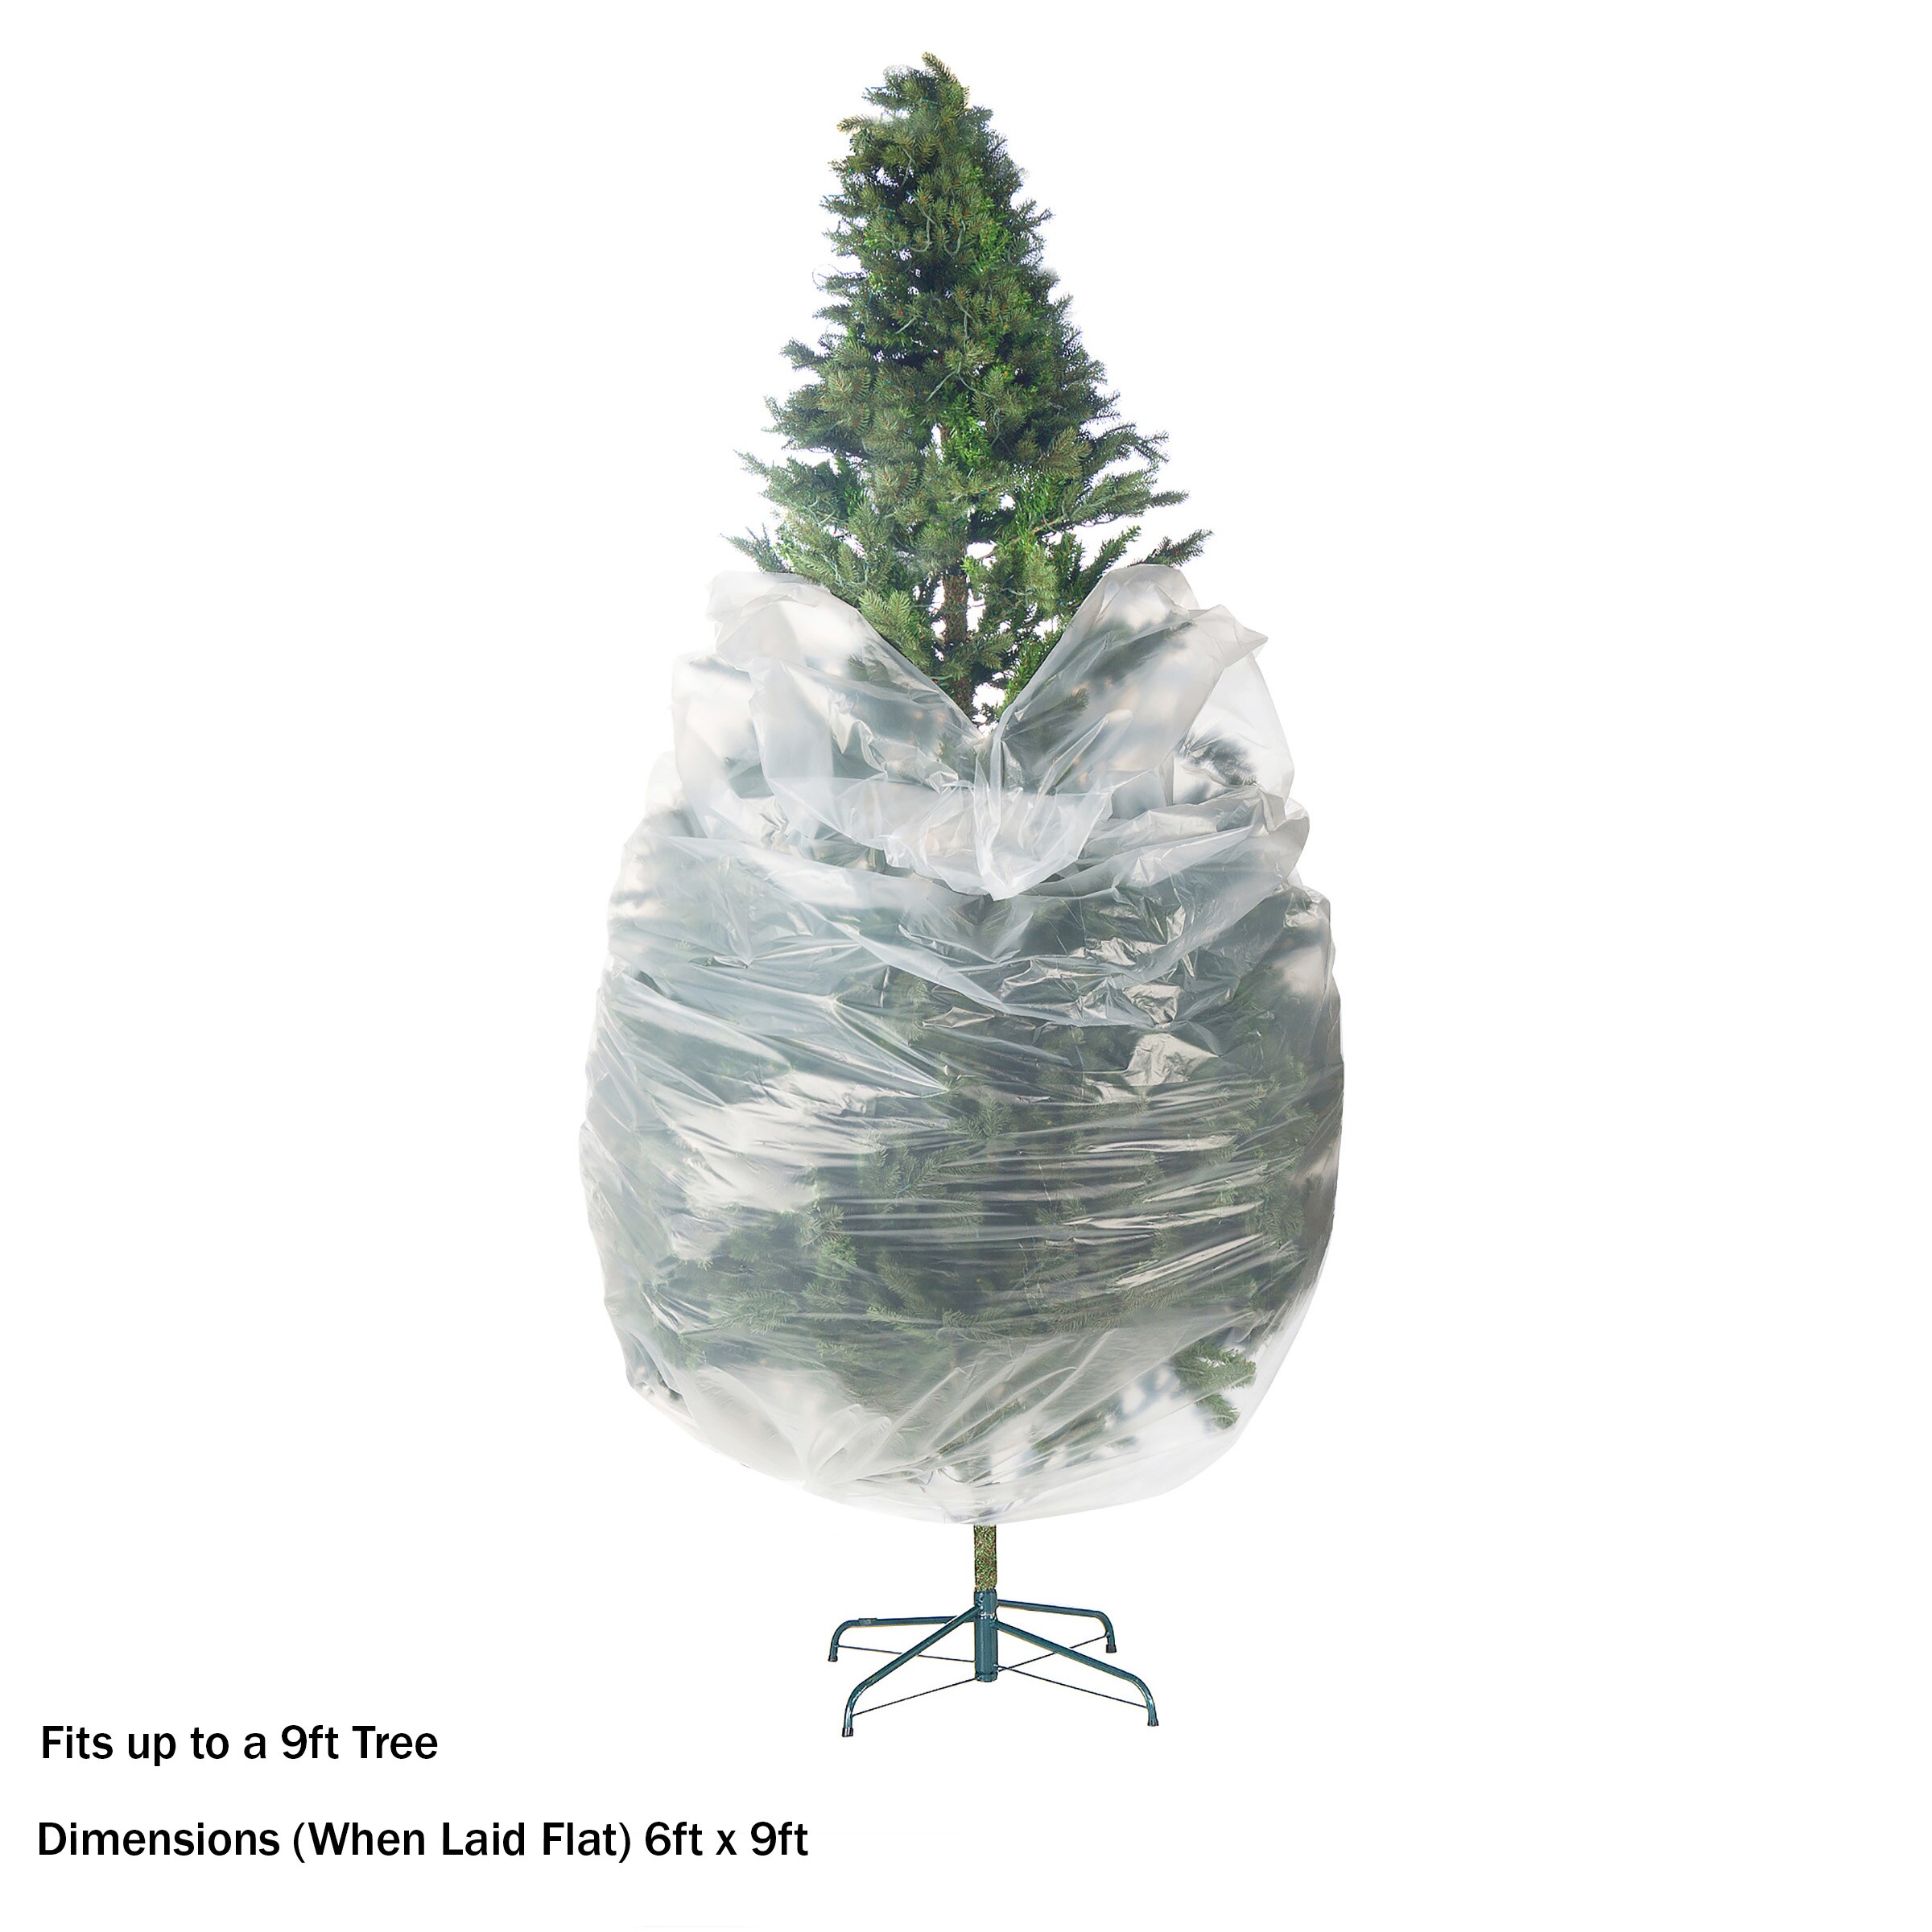 Santa's Bag 6'-9' Extra Large Tree Storage Bag : Target